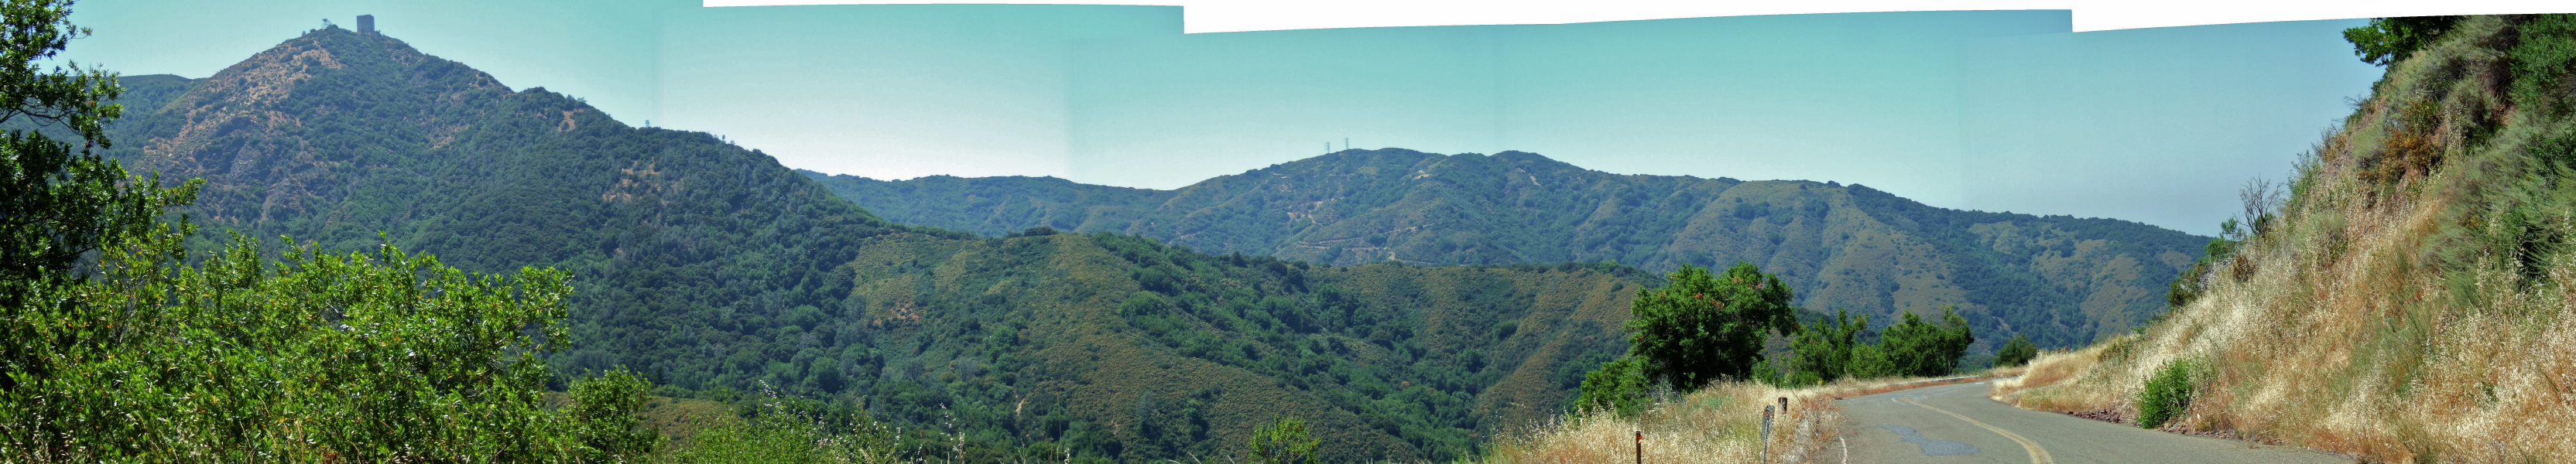 Mt. Umunhum Road Panorama 2